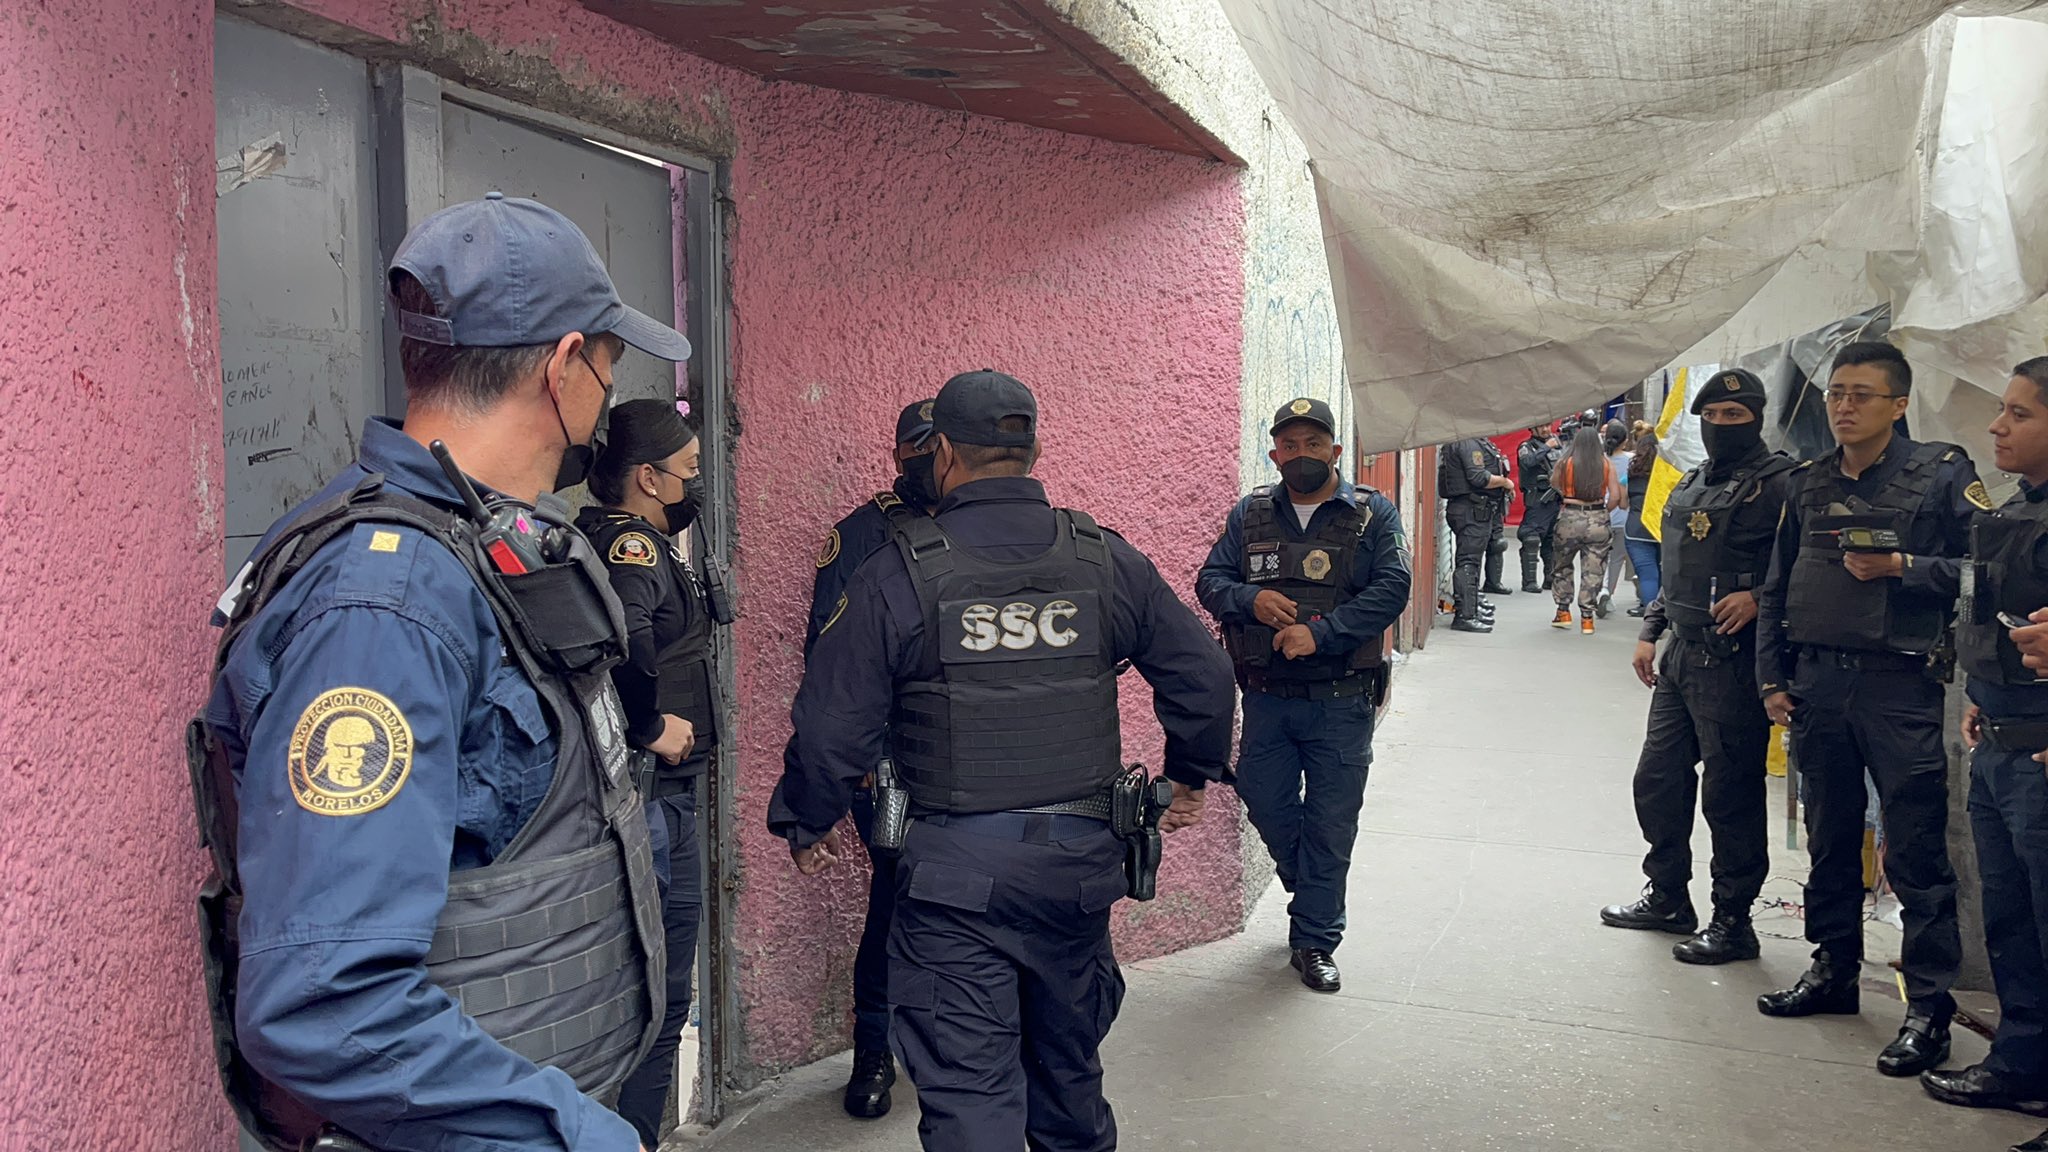 Balacera en Tepito provocó movilización policiaca en una vecindad  